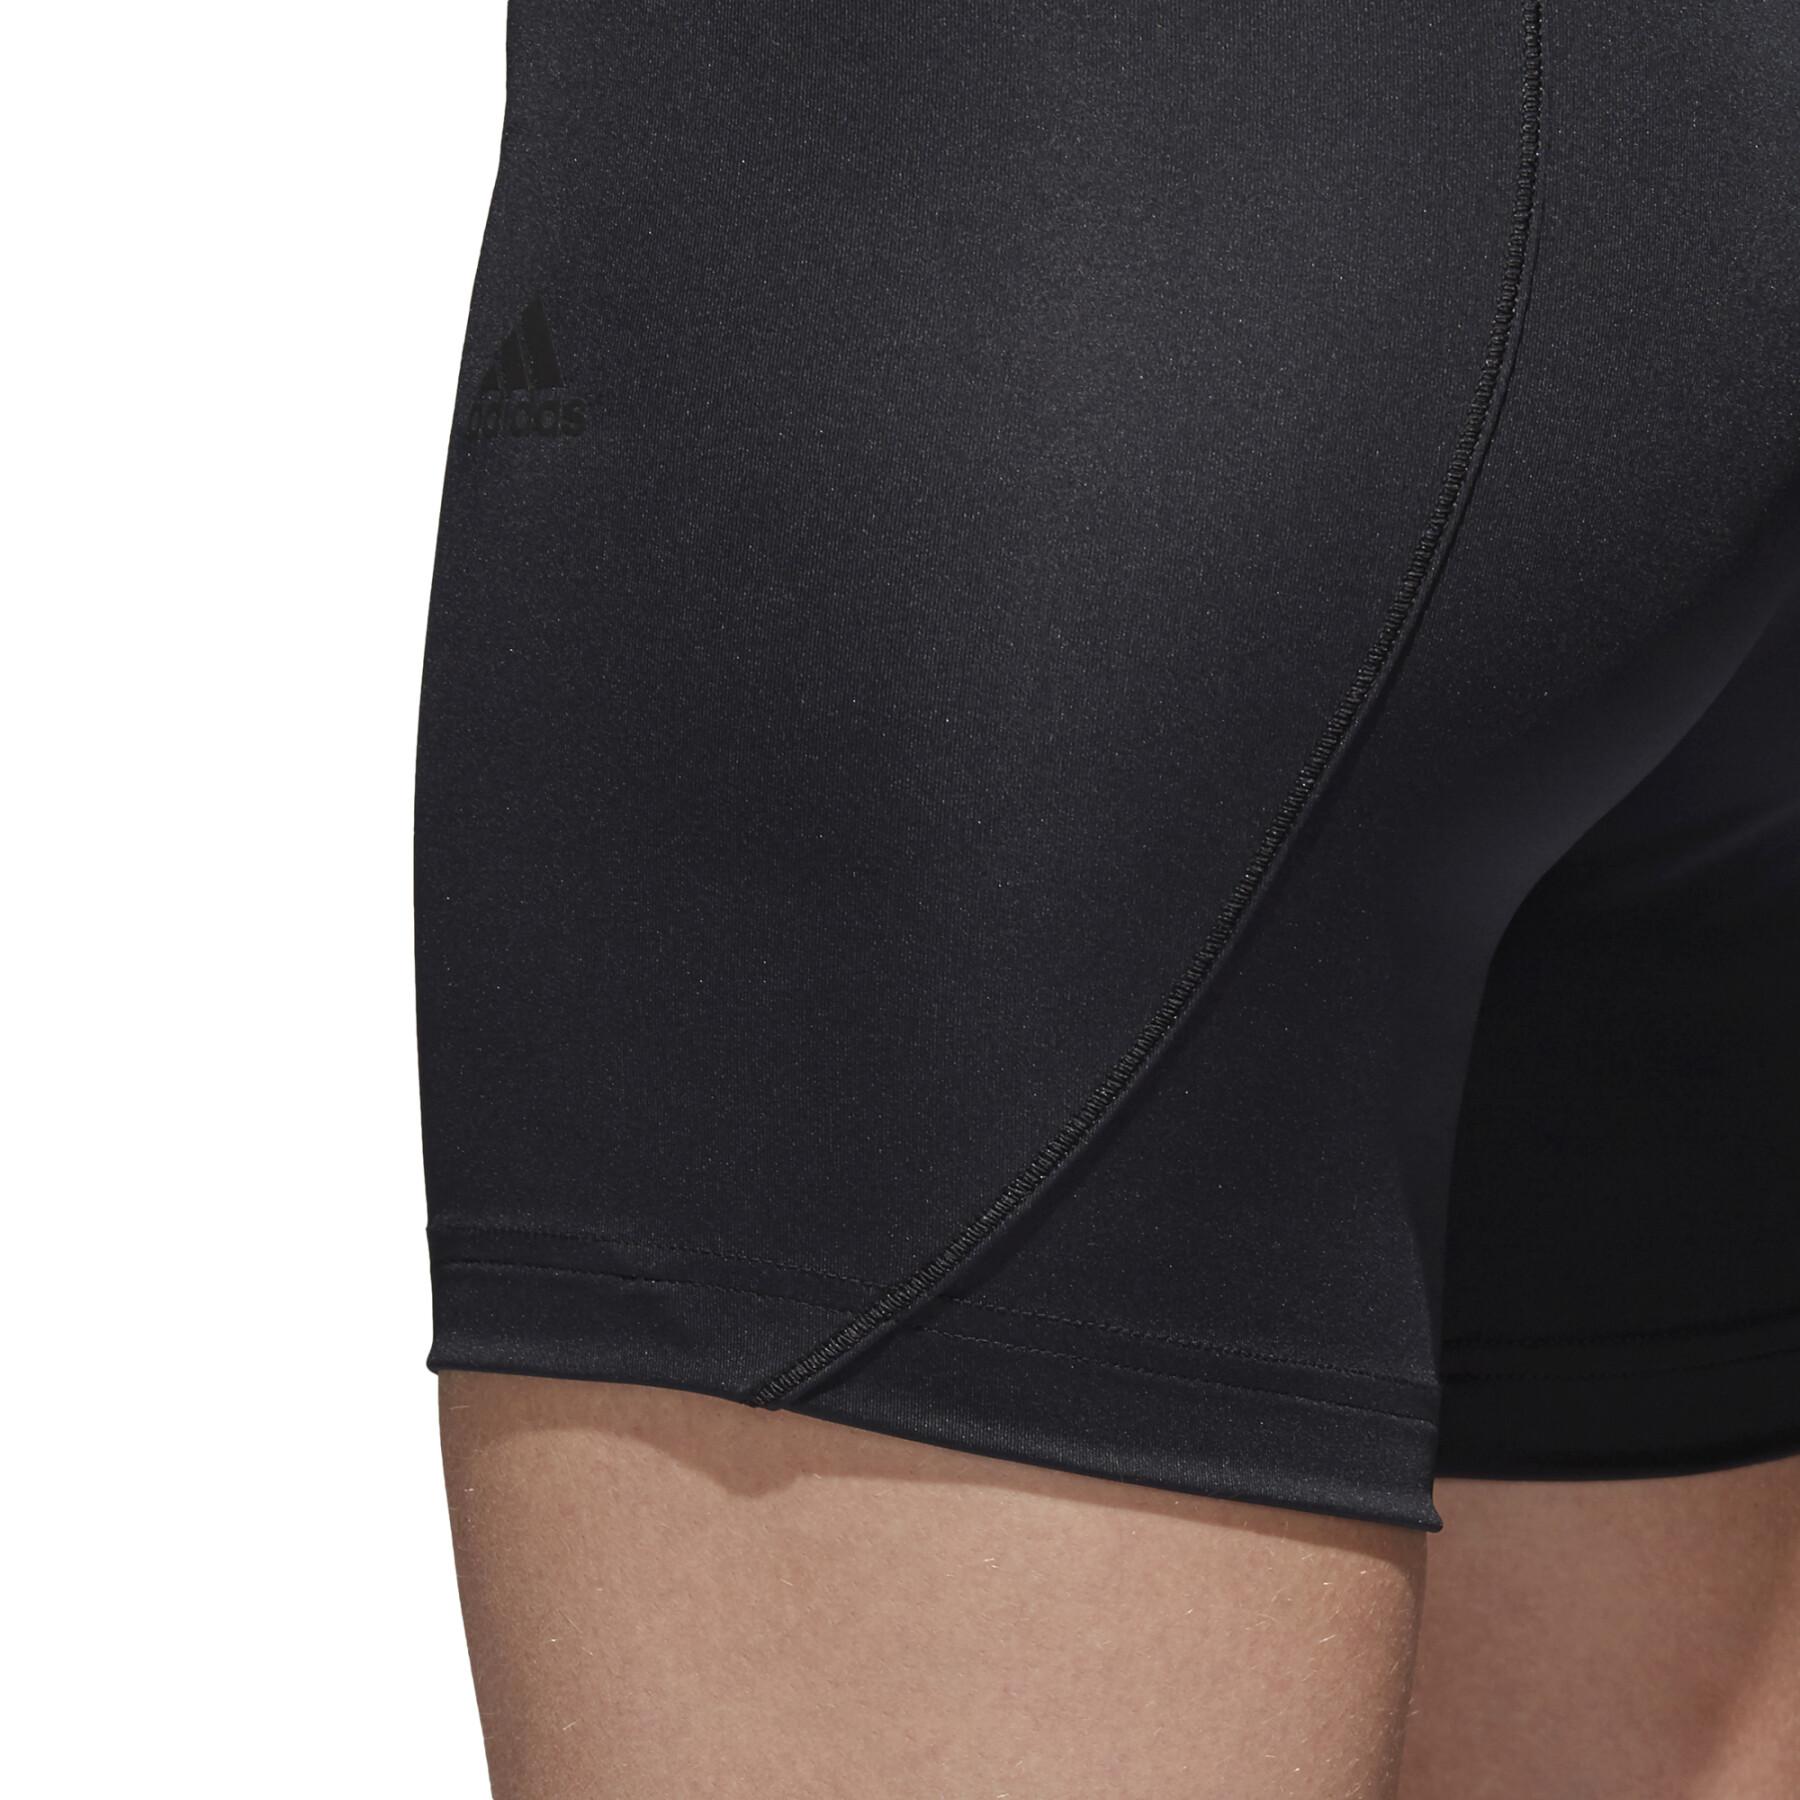 Pantalones cortos de compresión para mujer adidas Alphaskin sprt 5inch